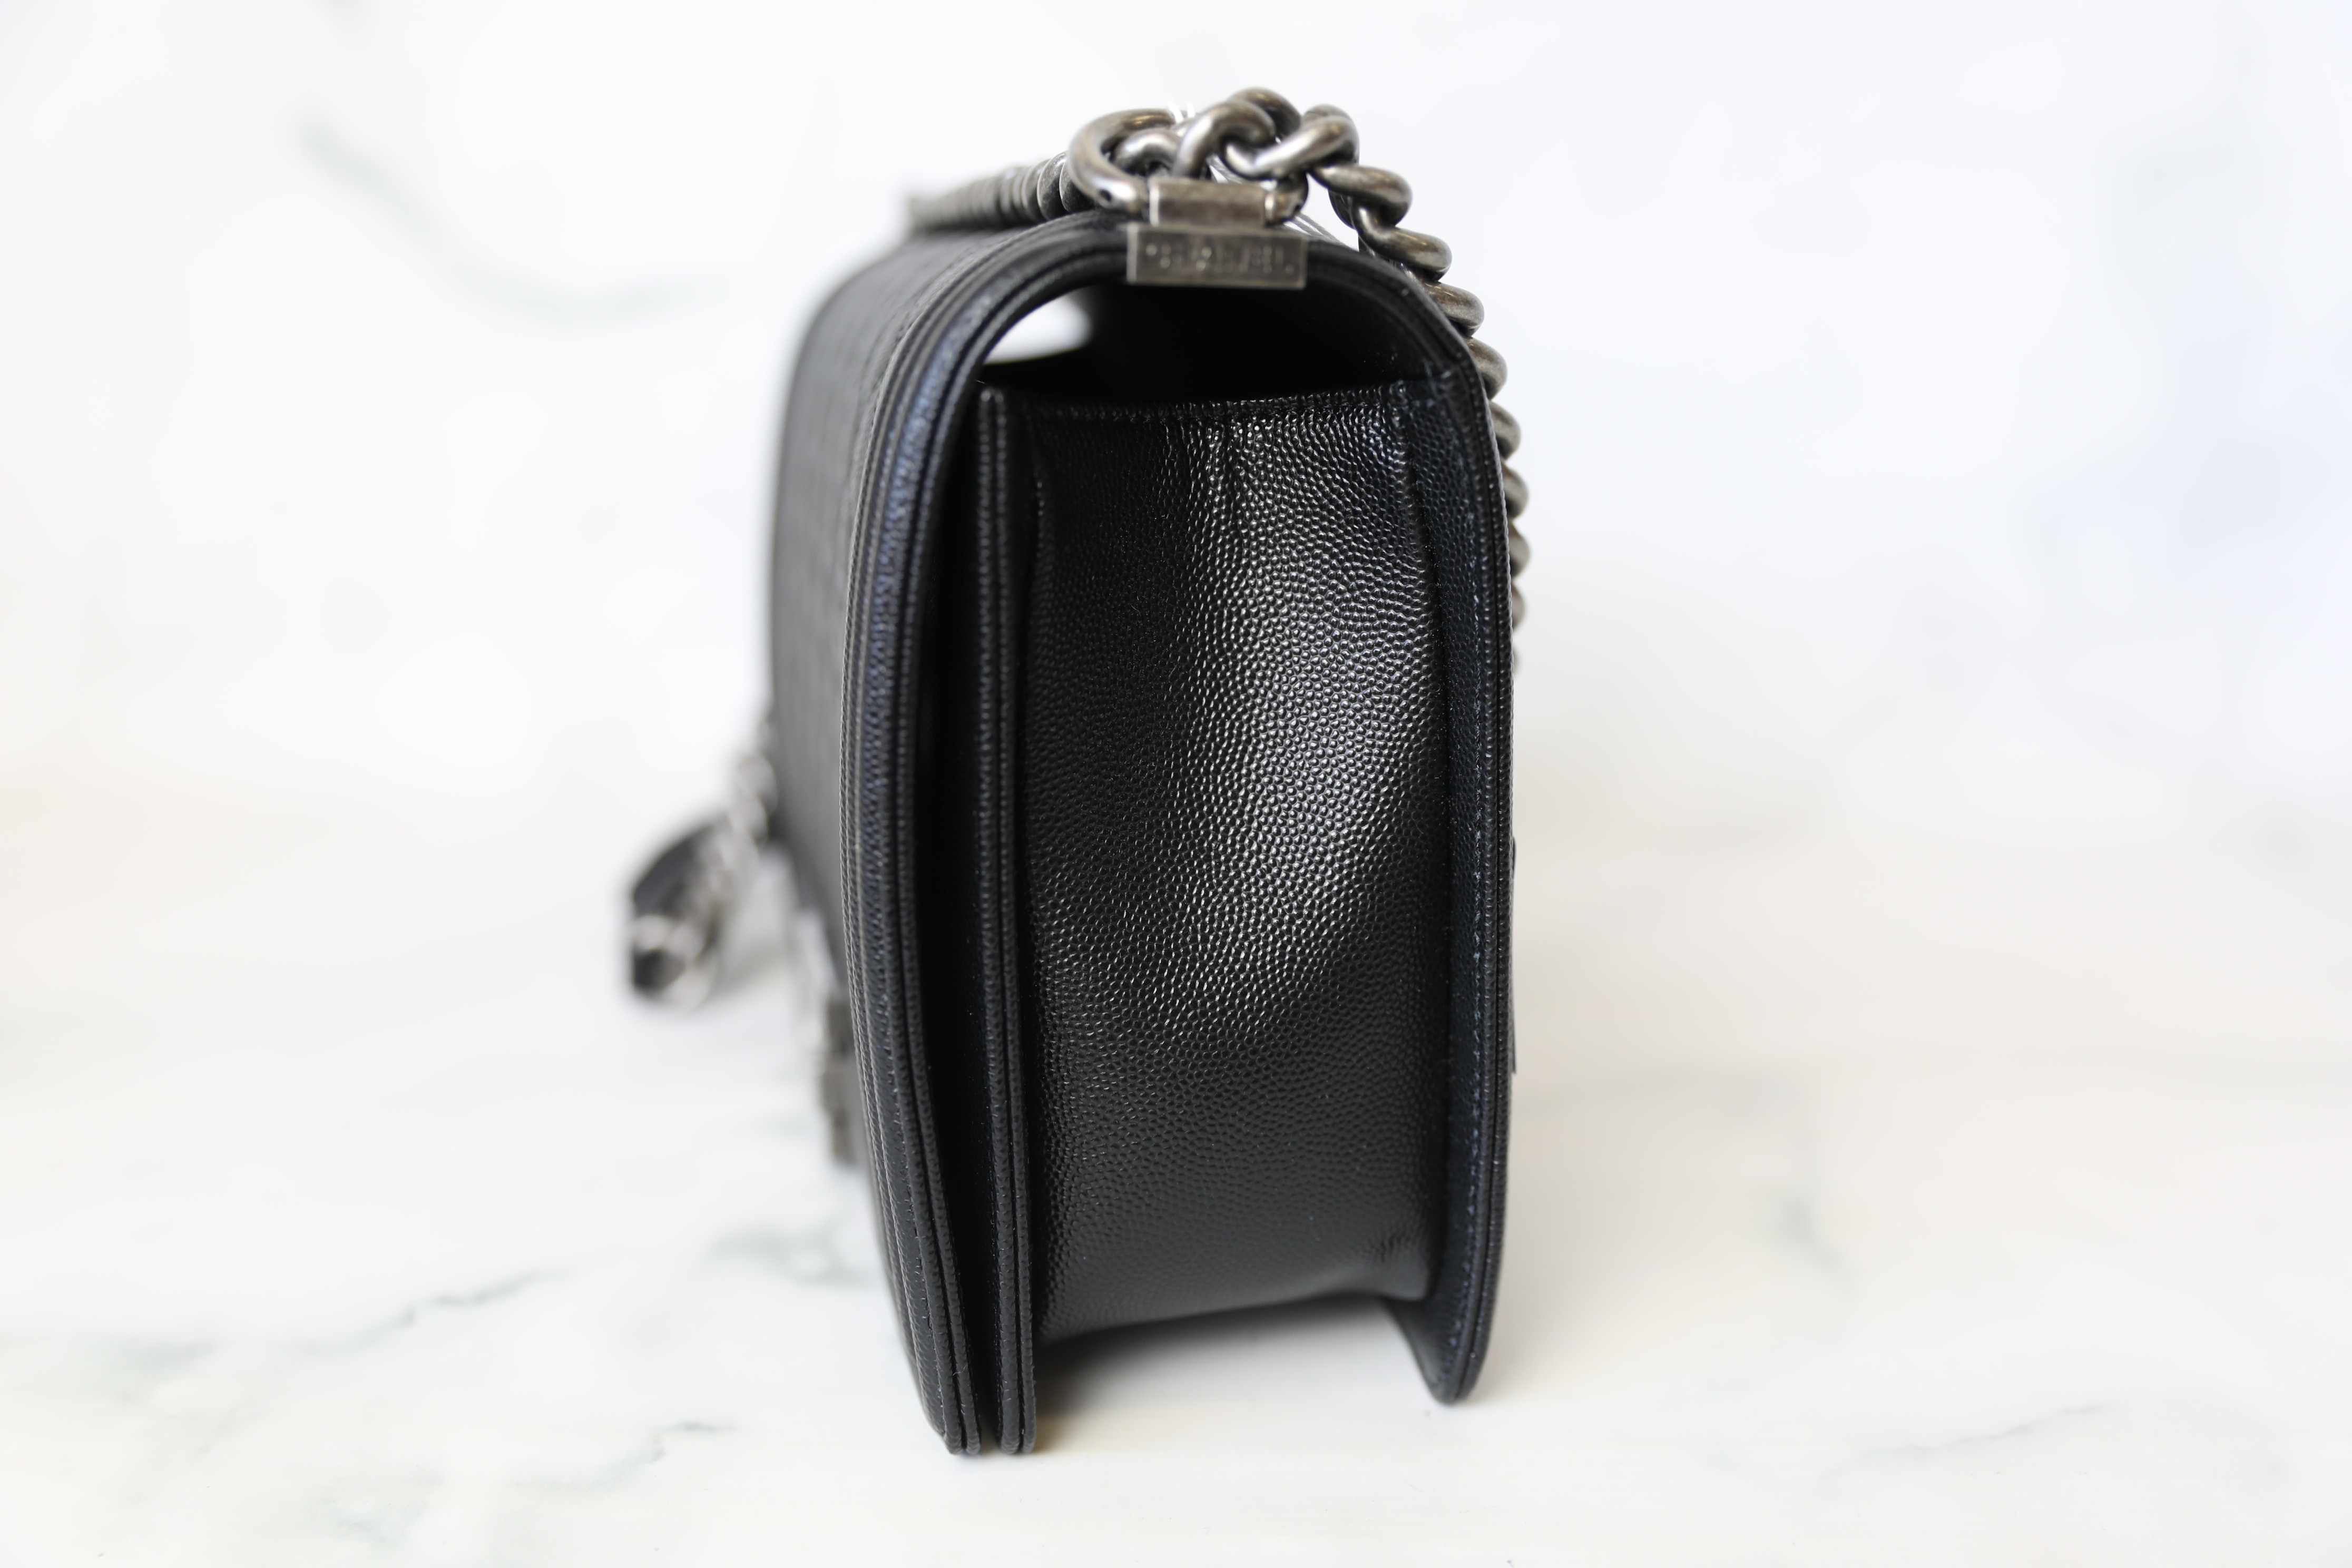 Chanel Boy Handbag in Black — UFO No More